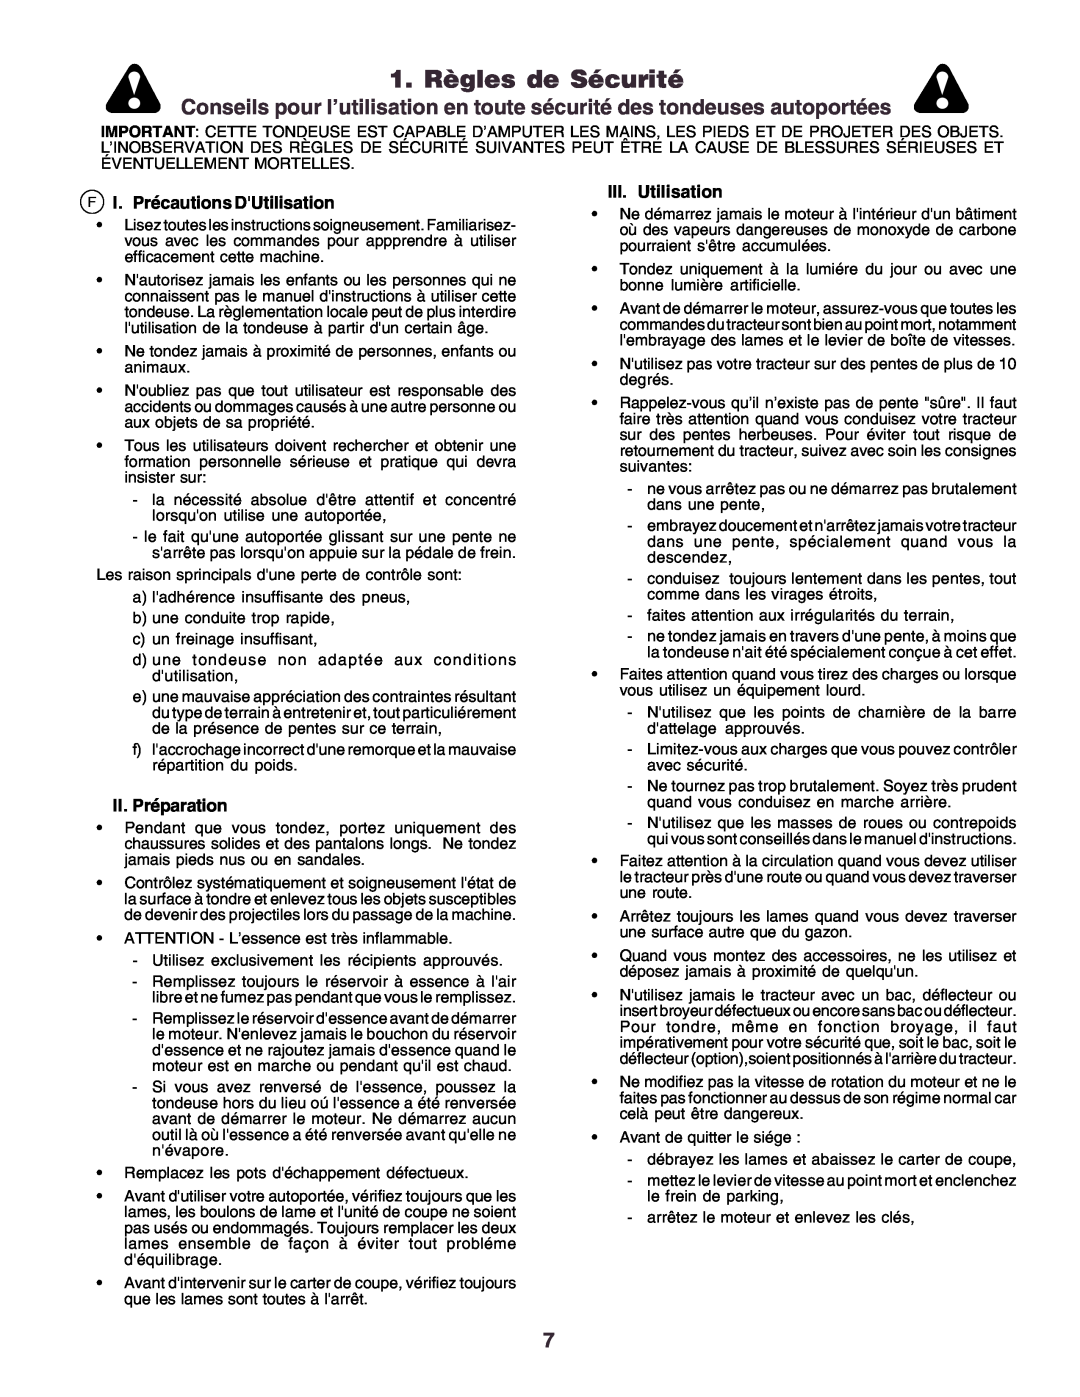 Husqvarna YTH170 instruction manual 1. Règles de Sécurité, FI. Précautions DUtilisation, II.Préparation, III.Utilisation 